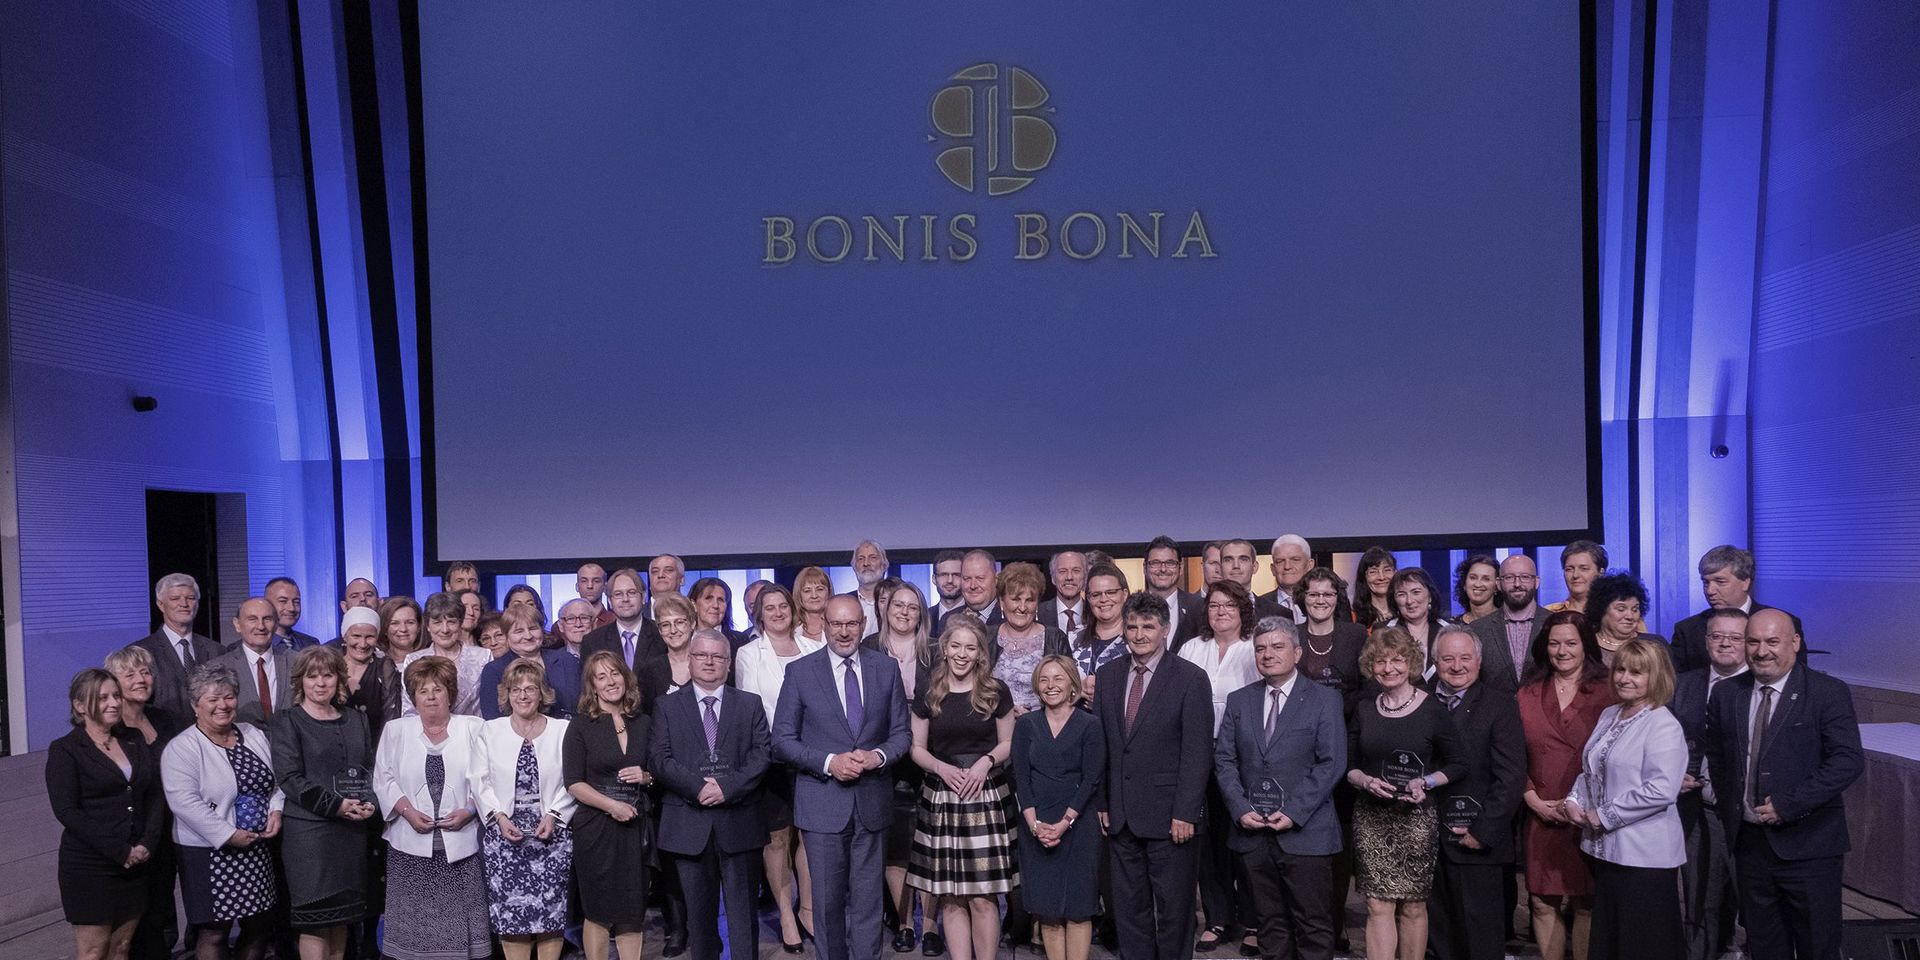 „A tehetségek gondozása nemzeti ügy” – átadták a Bonis Bona díjakat